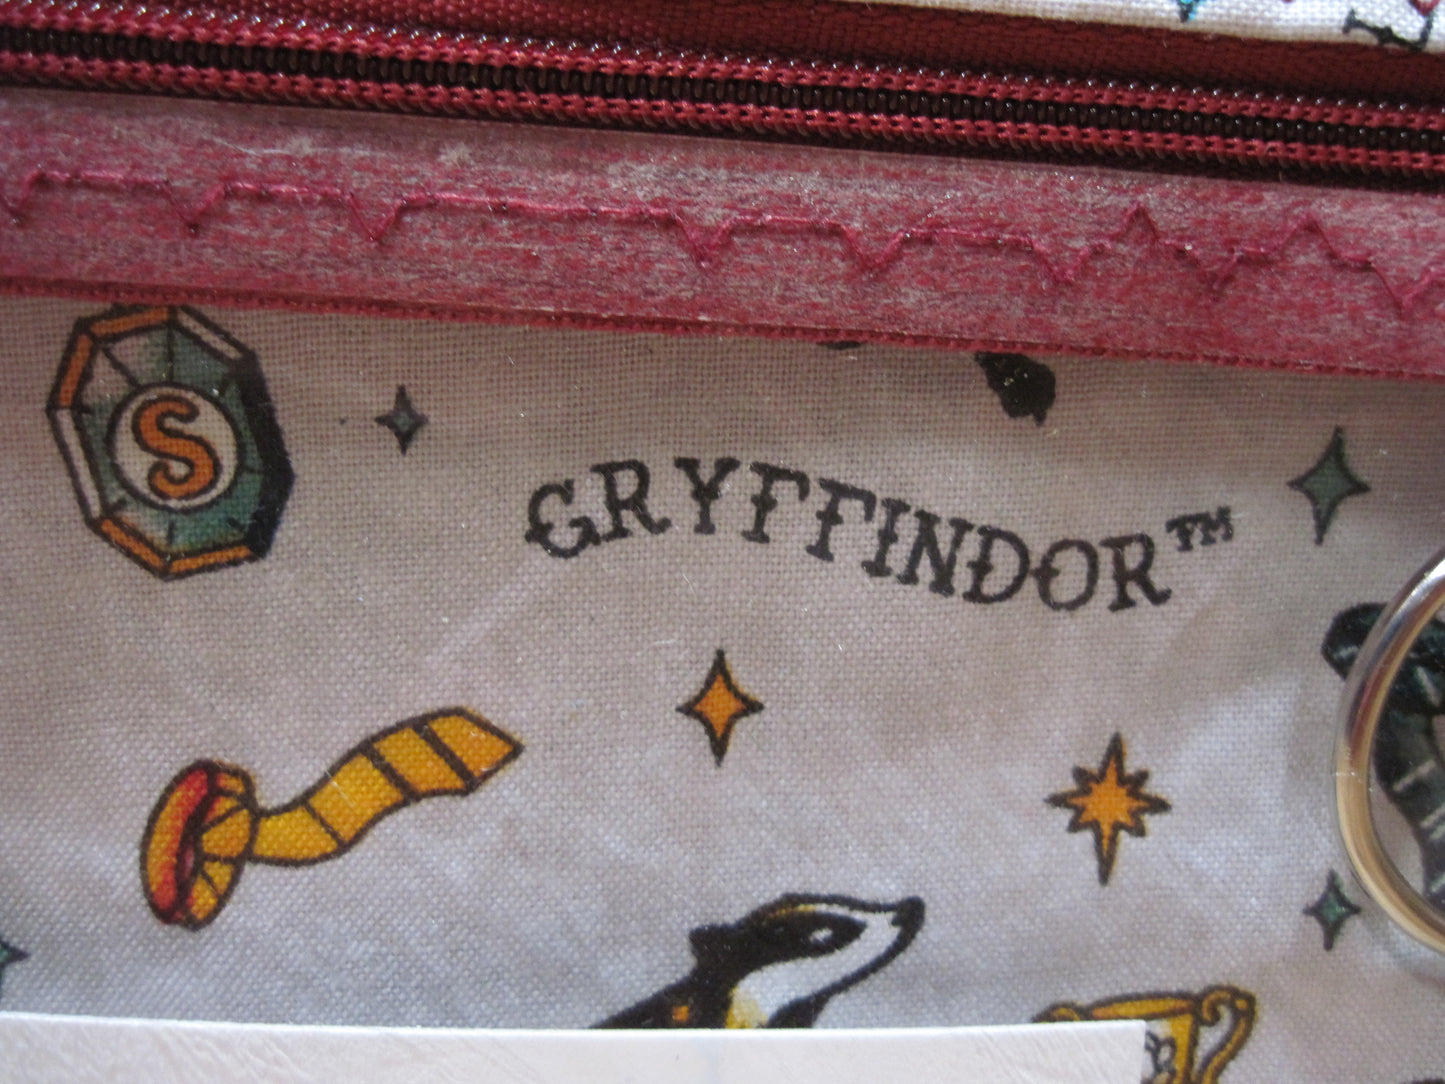 Notions Bag Gryffindor House w/ burgundy zipper